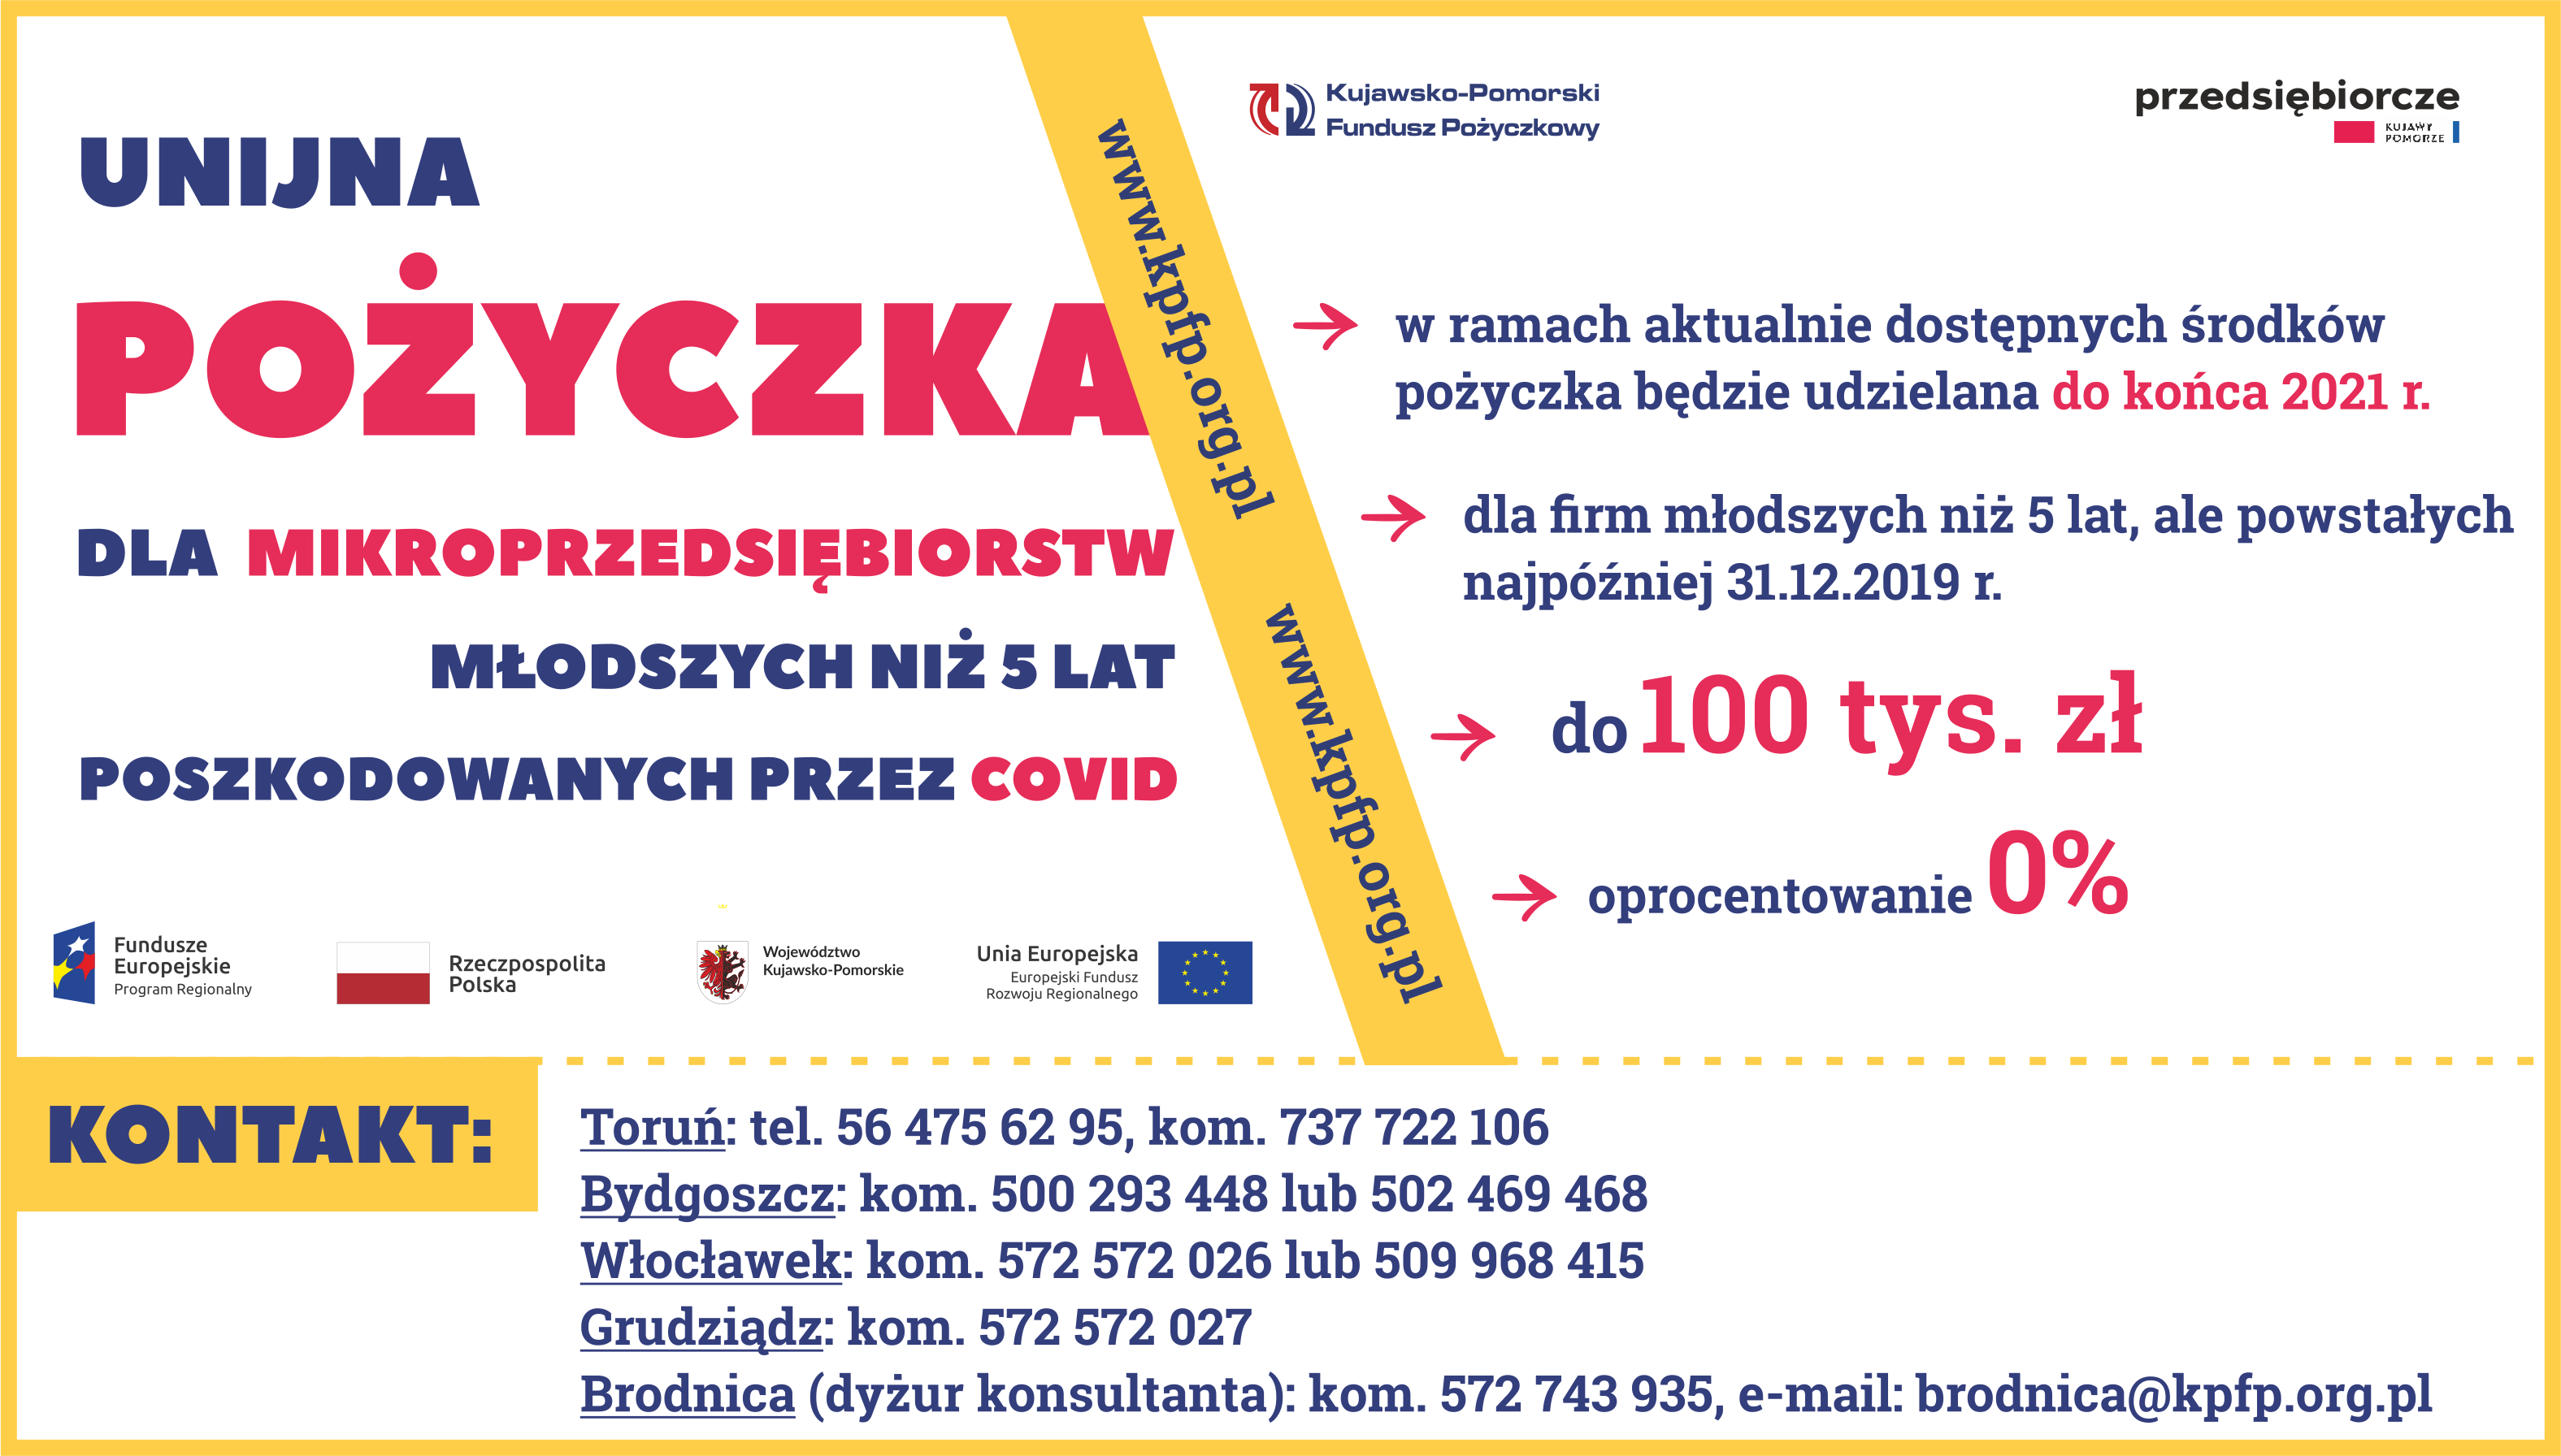  Informacja o unijnej pożyczce 0% dla firm z województwa kujawsko-pomorskiego - www.kpfp.org.pl